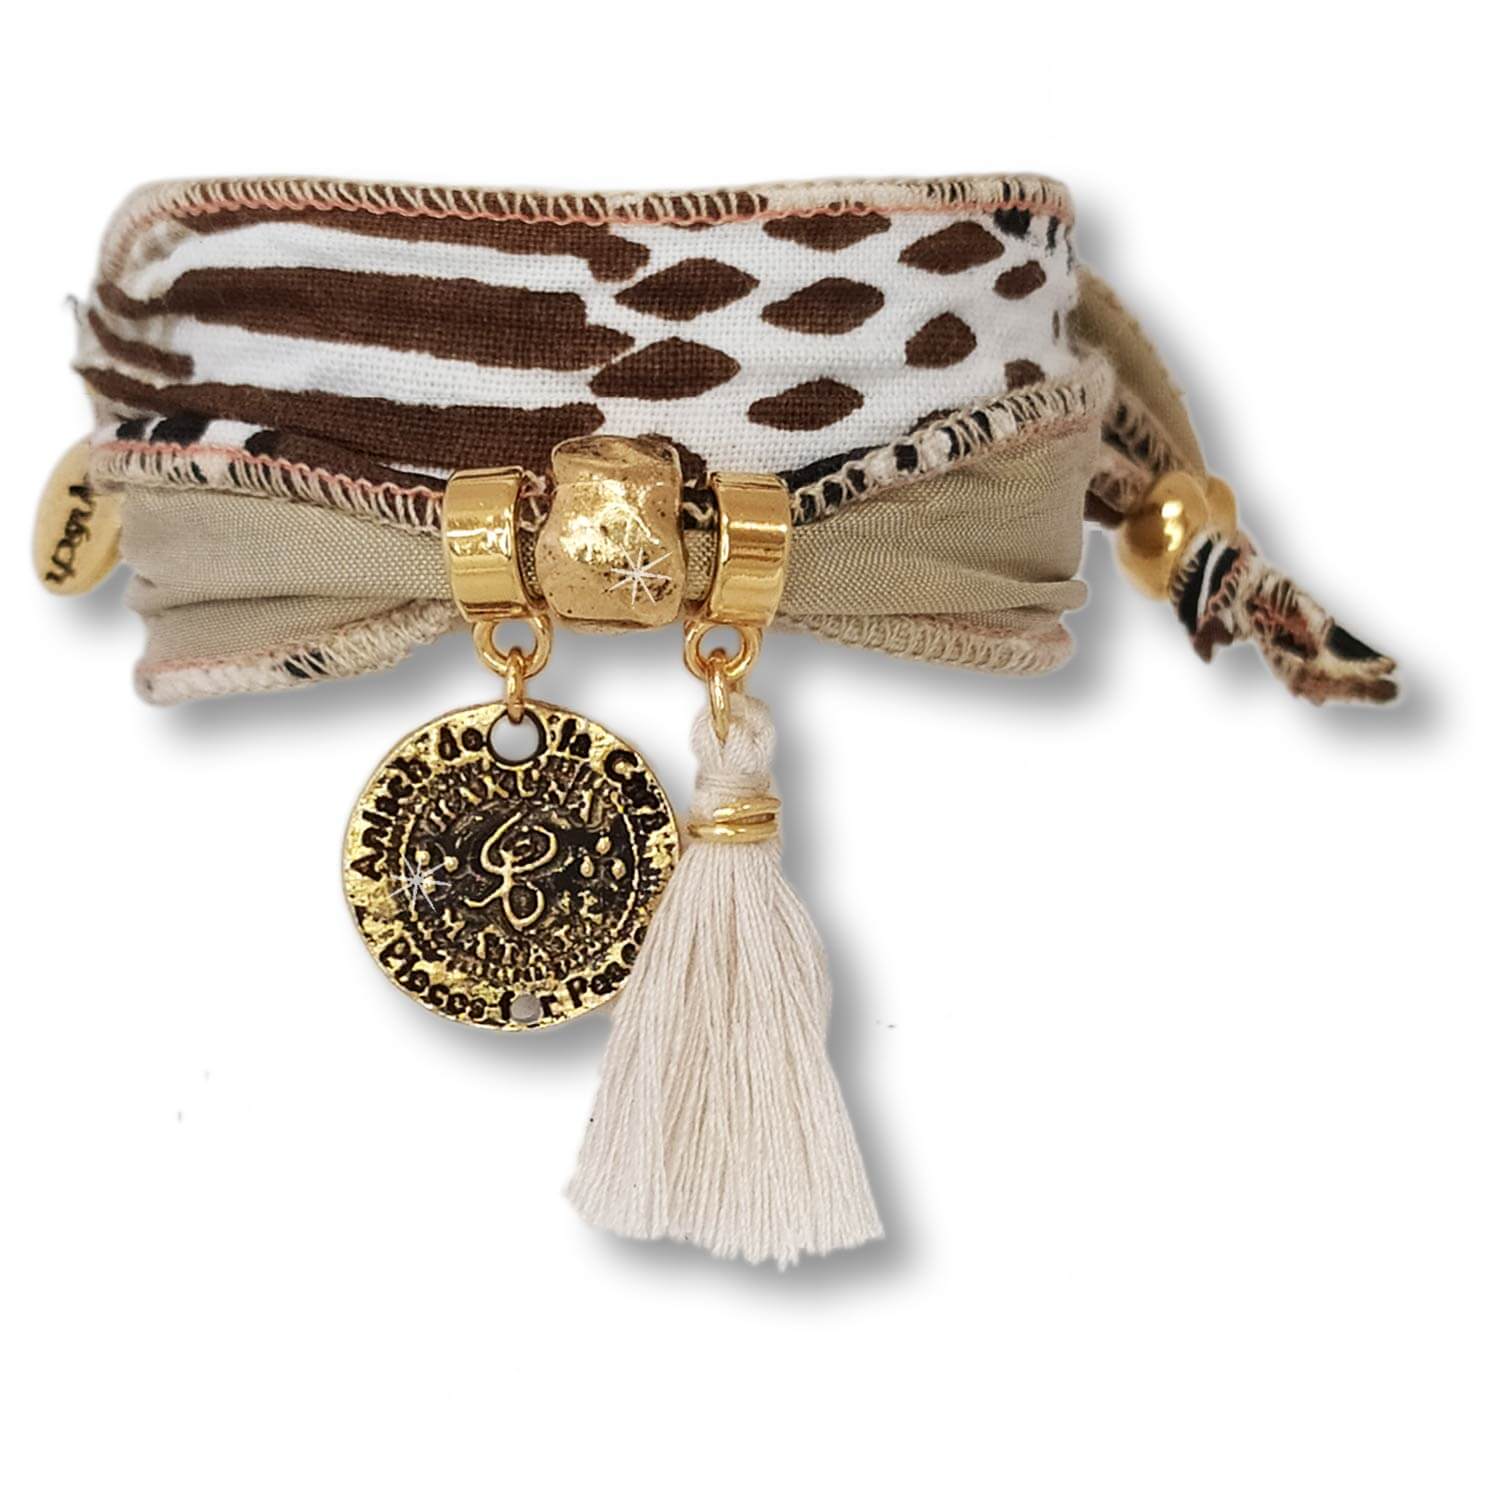 Desert Sand - Hakuna Matata wrap bracelet made of Kudhinda fabric